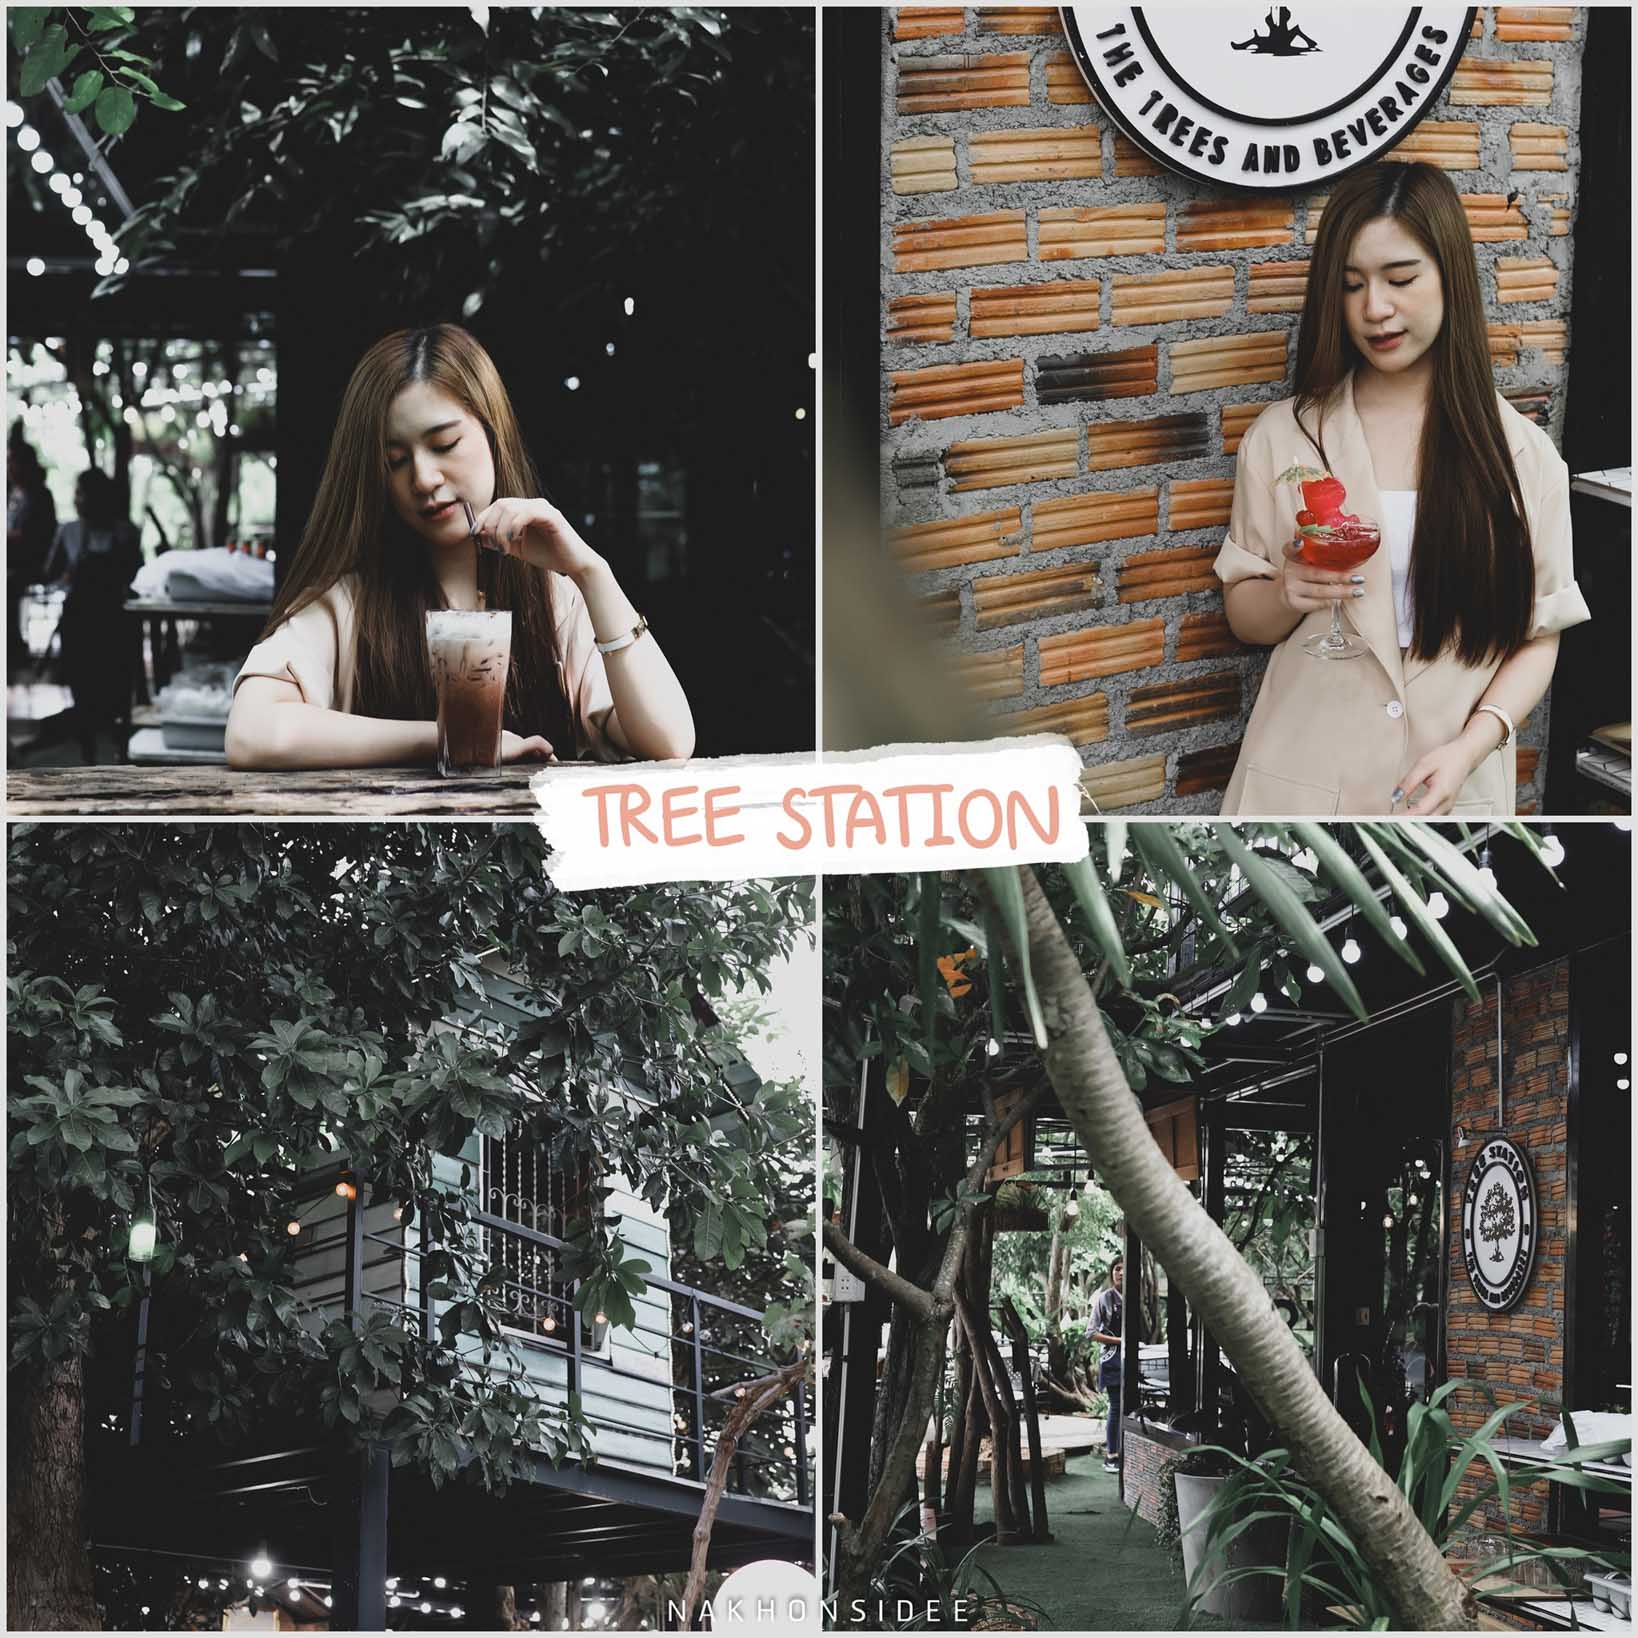 Tree-Station-nakhonsi คาเฟ่-ร้านกาแฟ-ร้านอาหาร-เปิดใหม่แบบใหม่จริงๆเพิ่งเปิดเมื่อวานกันเลยครับ-ร้านนี้ชื่อว่า-Tree-Station-หรือ-สถานีต้นไม้-จุดเด่นคือร้านกว้างมาก-มีมุมถ่ายรูปเยอะๆ-ตามชื่อคือโอบล้อมไปด้วยต้นไม้ธรรมชาติสวยสดงดงาม-บอกเลยว่าพันธ์ไม้หายากเพียบ-แอดก็ไม่รู้จัก--แต่เจ้าของบอกมาครับ-อิอิ--รีวิวกันต่อเรื่องอาหารนี่อร่อยจัดจานสวยหรู-ระดับเชฟระดับท็อปกันเลยทีเดียว-แถมราคาไม่แพงด้วยน้าาา-บอกเลยว่าสุด-รีวิวกันต่อส่วนของบรรยากาศแอดให้-10/10-โต๊ะนั่งสบายส่วนตัวมาก-มีหลายโซนทั้ง-โซนห้องแอร์-โซนบ้านต้นไม้-โซนชั้นสอง-โซนซุ้มดินเนอร์-และอีกมากมาย-แต่ละโซนแทบไม่เหมือนกันเลย-เป็นร้านที่มีจุดเด่นเอกลักษณ์ดีมากๆครับ-ต้องมาน้าาาา คาเฟ่,นครศรีธรรมราช,2021,จุดกิน,ของกิน,วิวหลักล้าน,ร้านกาแฟ